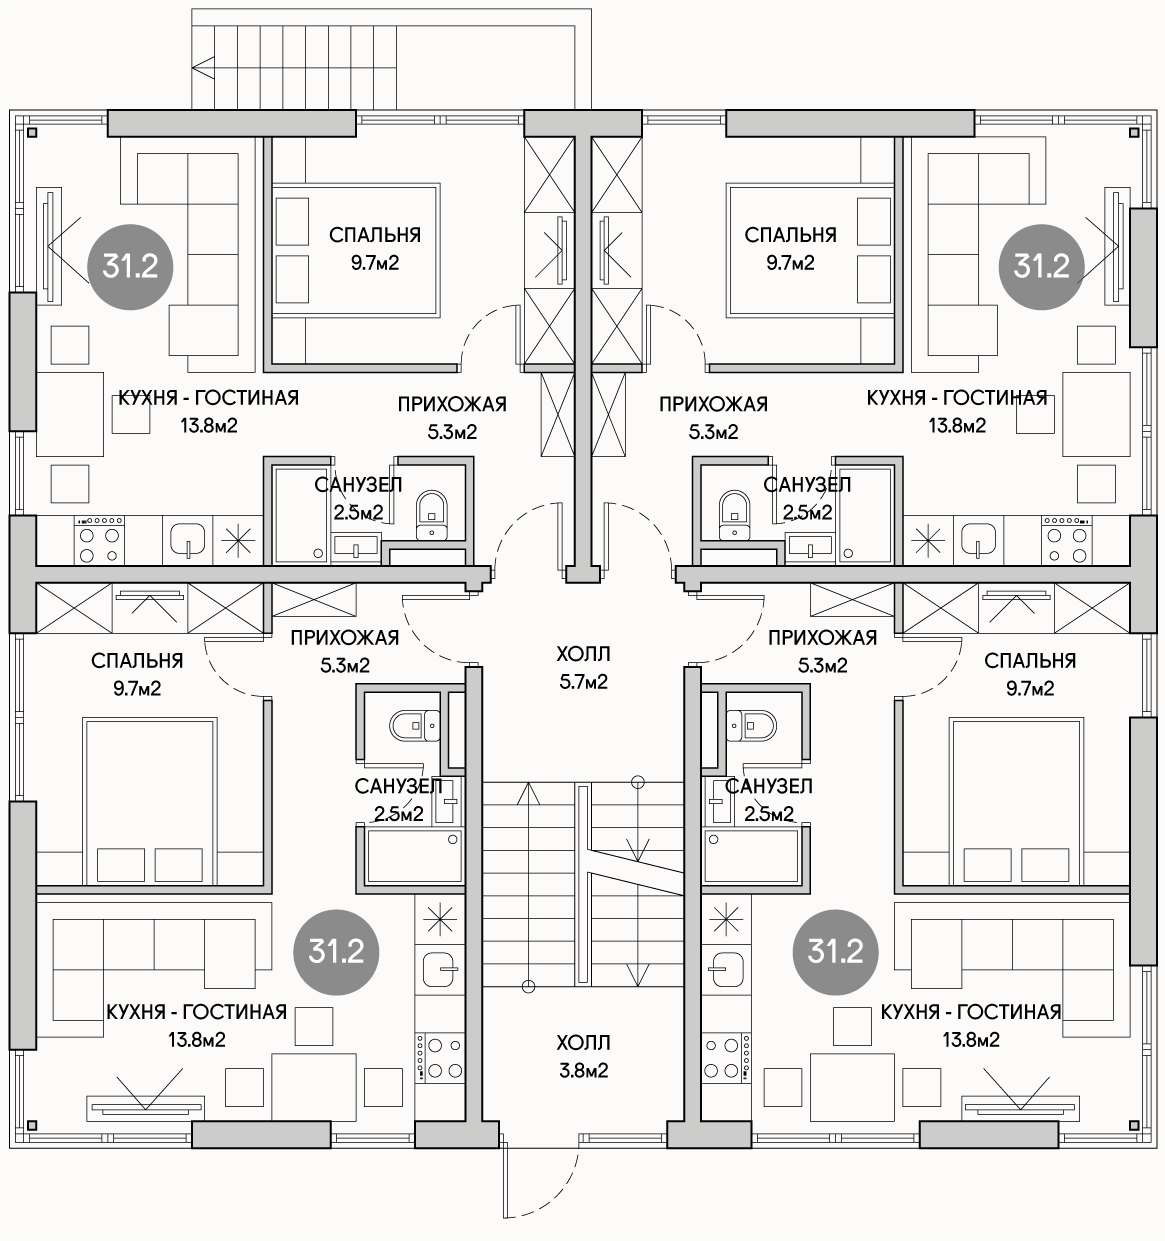 Планирока 1-го этажа в проекте Доходный дом на 16 квартир под сдачу MK-516